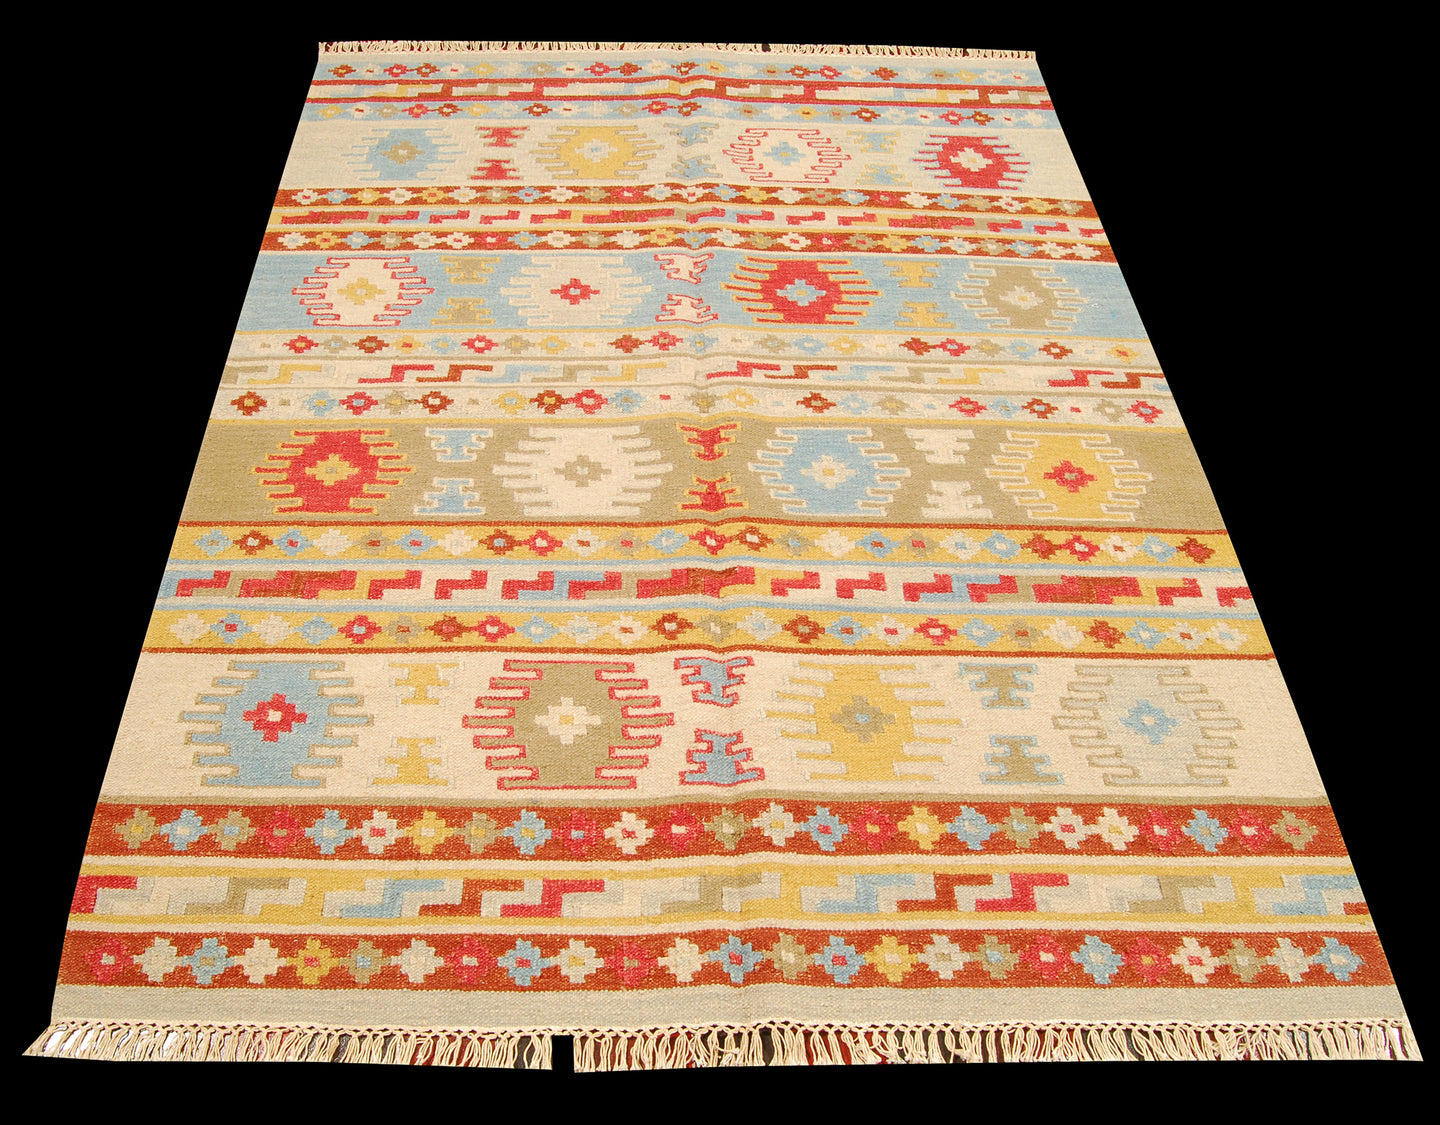 Original Authentic Hand Made Carpet 200x140 CM